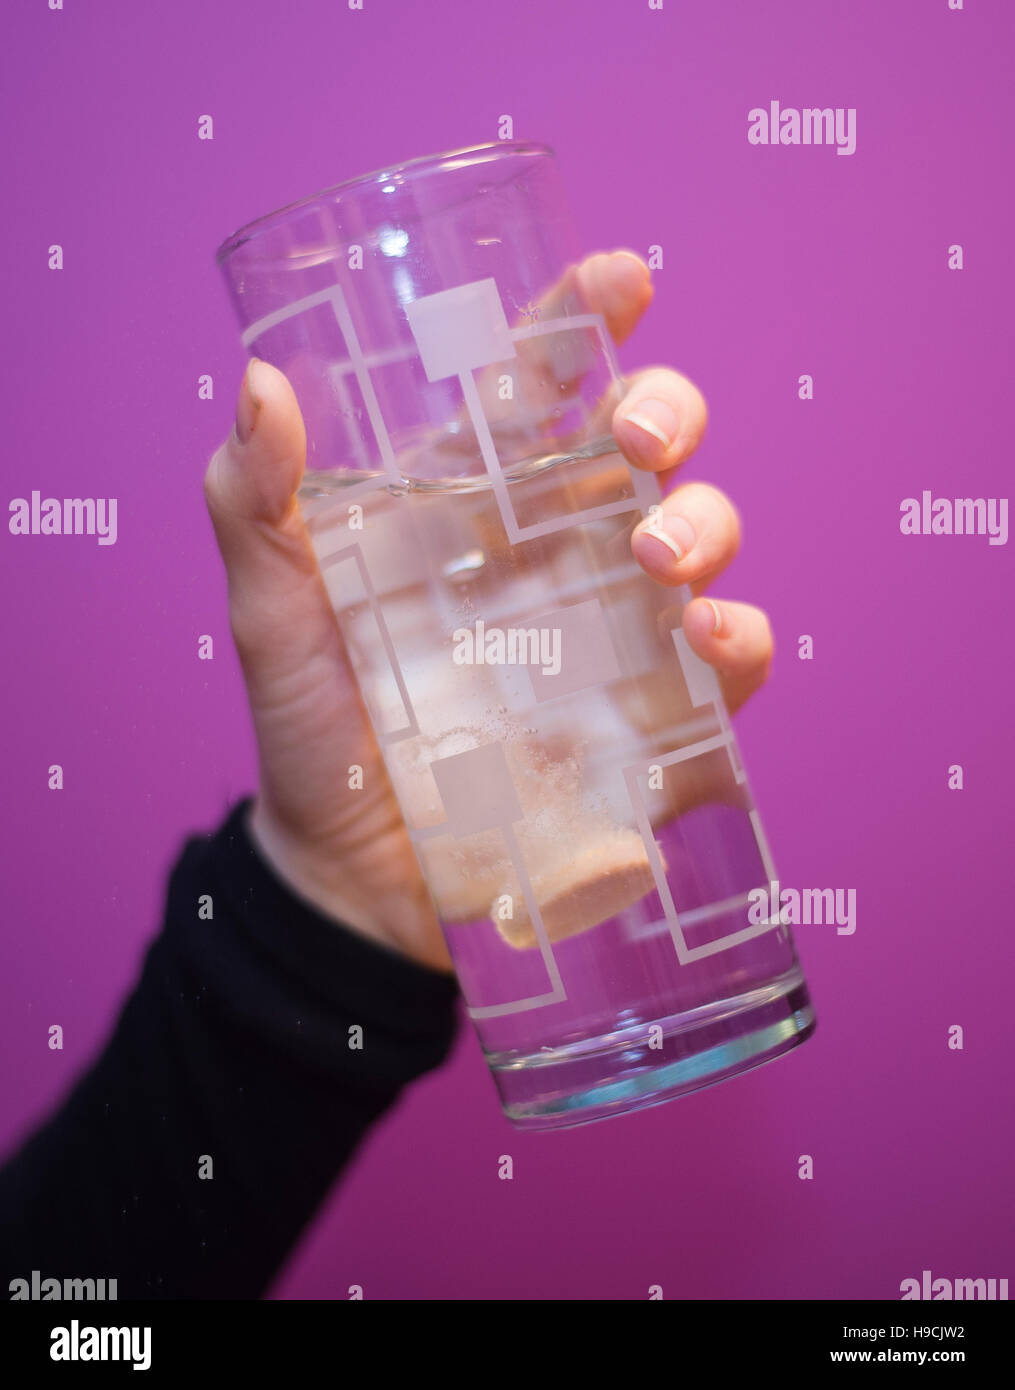 Gesamtansicht der ein Brausetabletten Vitamin C-Tablette in einem Glas Wasser. Stockfoto